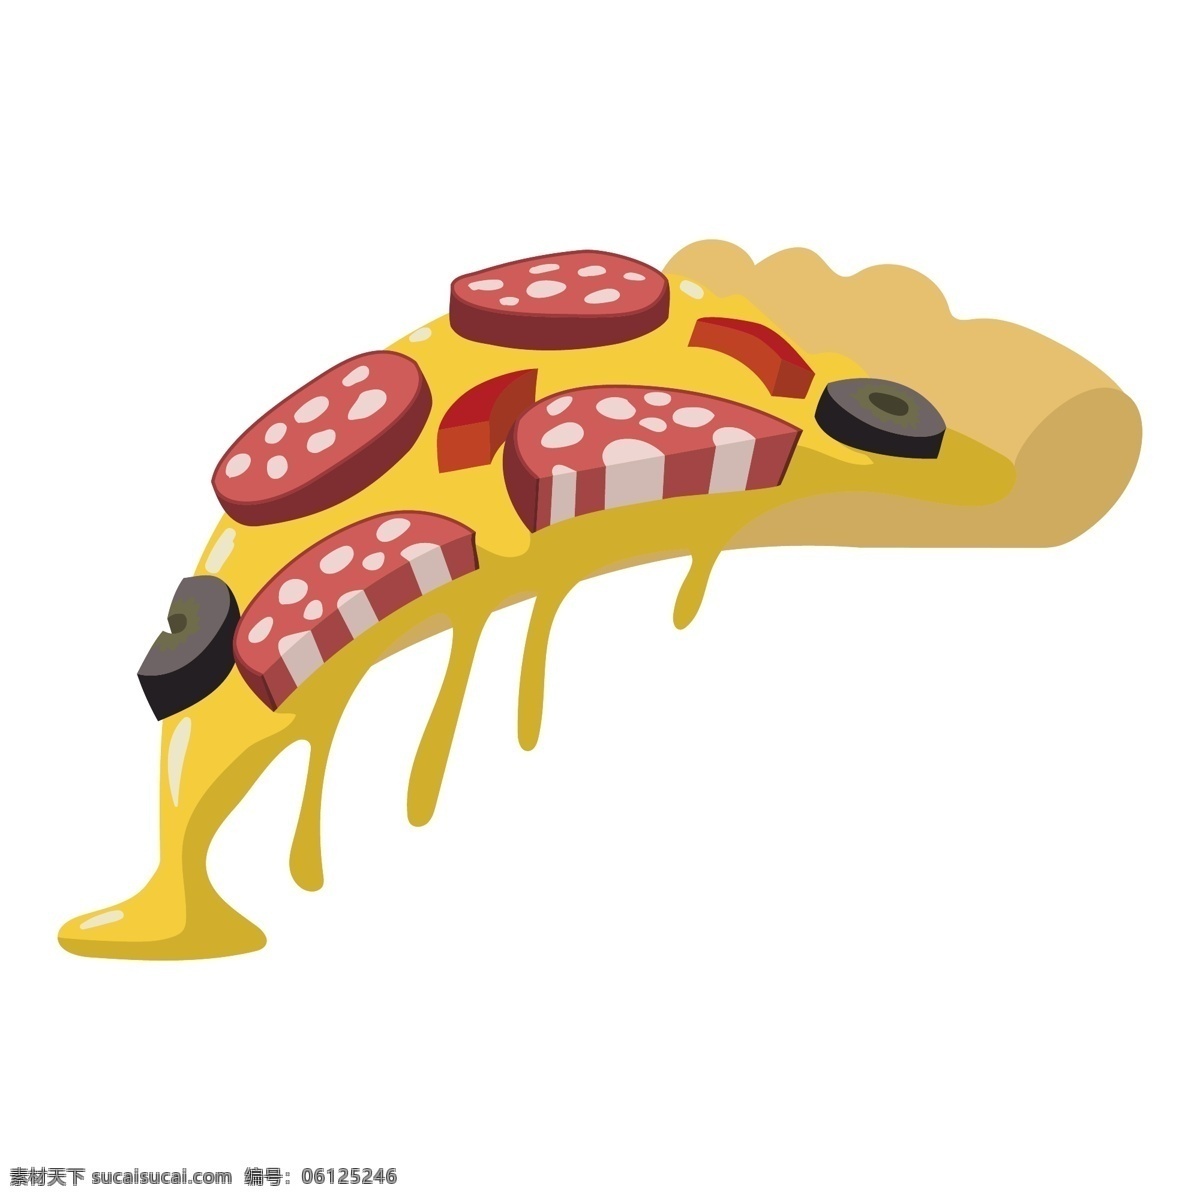 卡通 披萨 美食 漫画 披萨标签 披萨logo 意大利美食 pizza 卡通披萨漫画 卡通美食插画 餐饮美食 生活百科 矢量素材